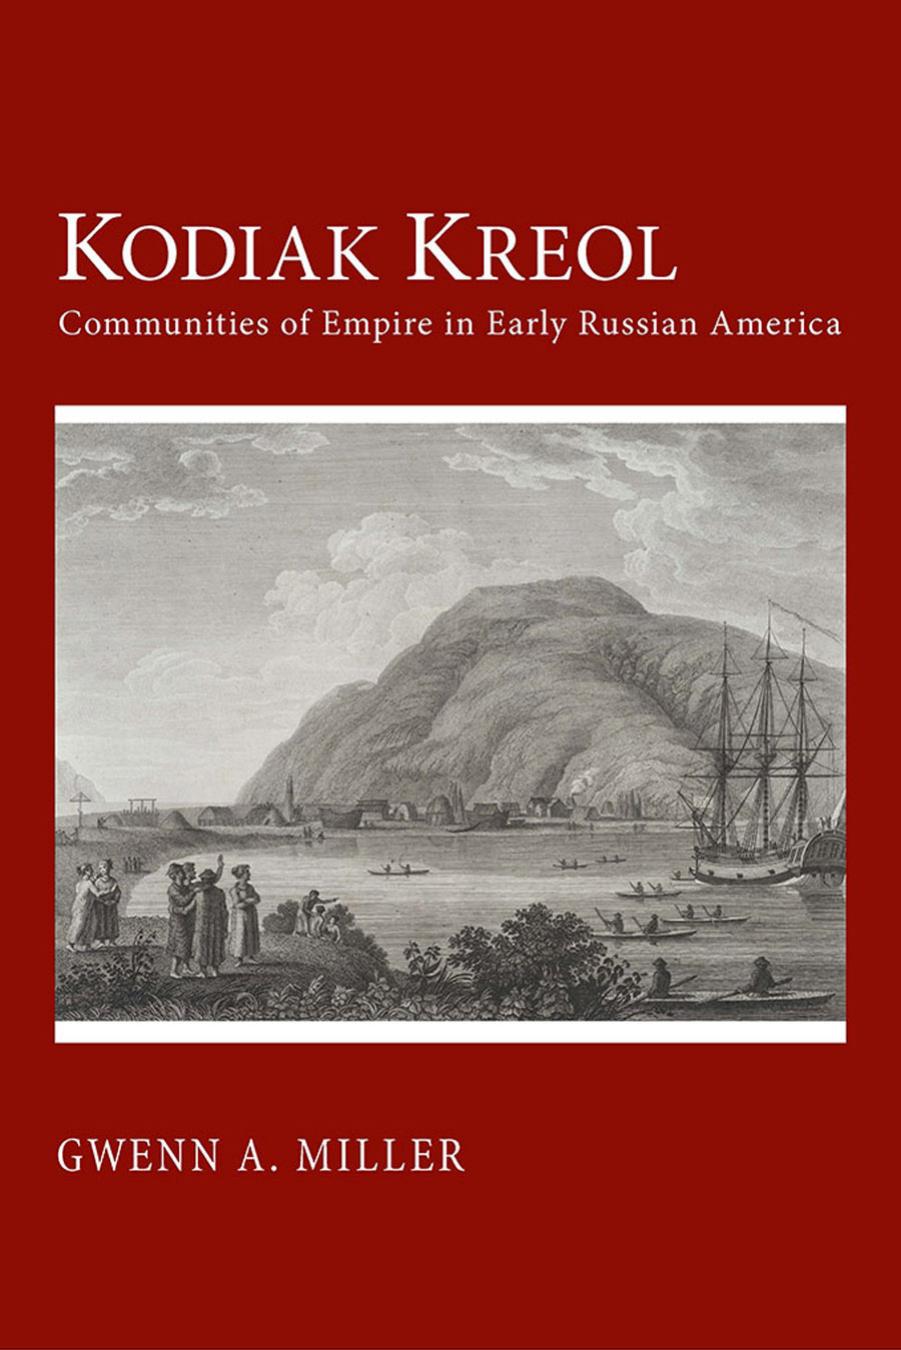 Kodiak Kreol: Communities of Empire in Early Russian America by by Gwenn A. Miller